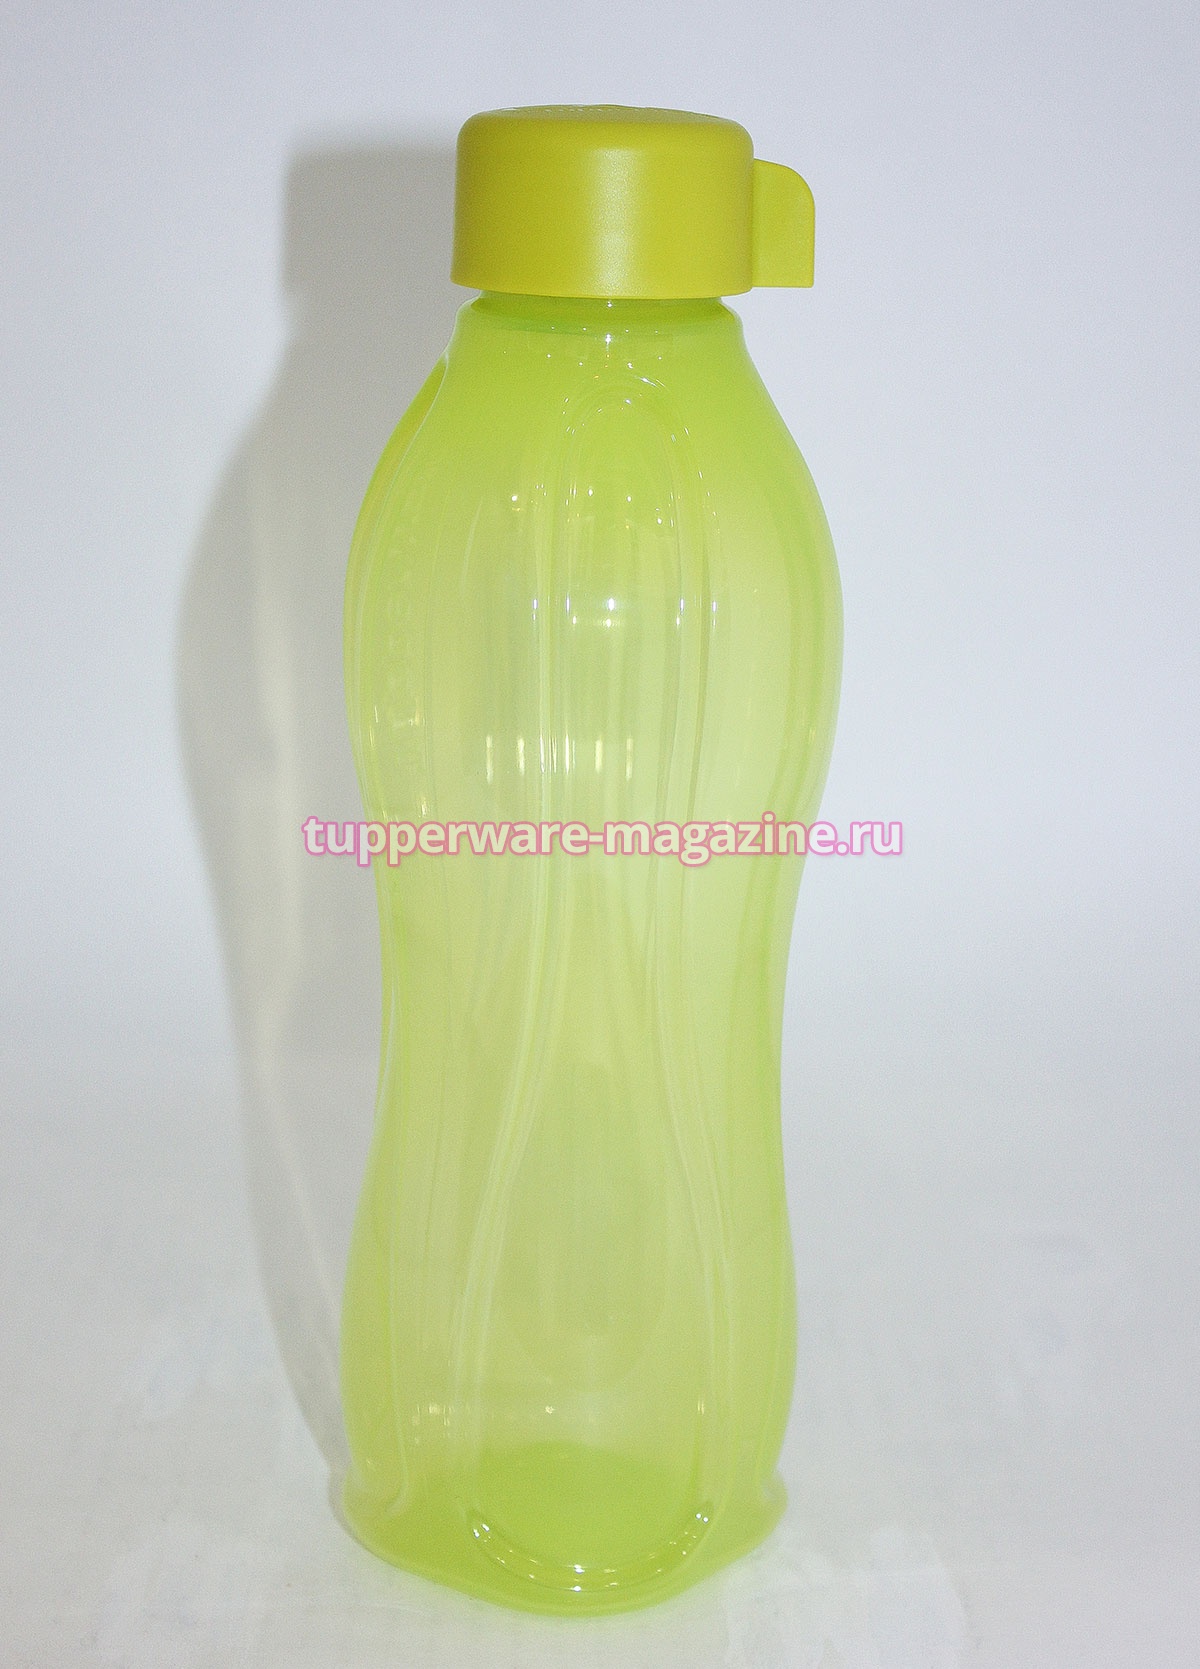 Эко-бутылка 750 мл без клапана в салатовом цвете